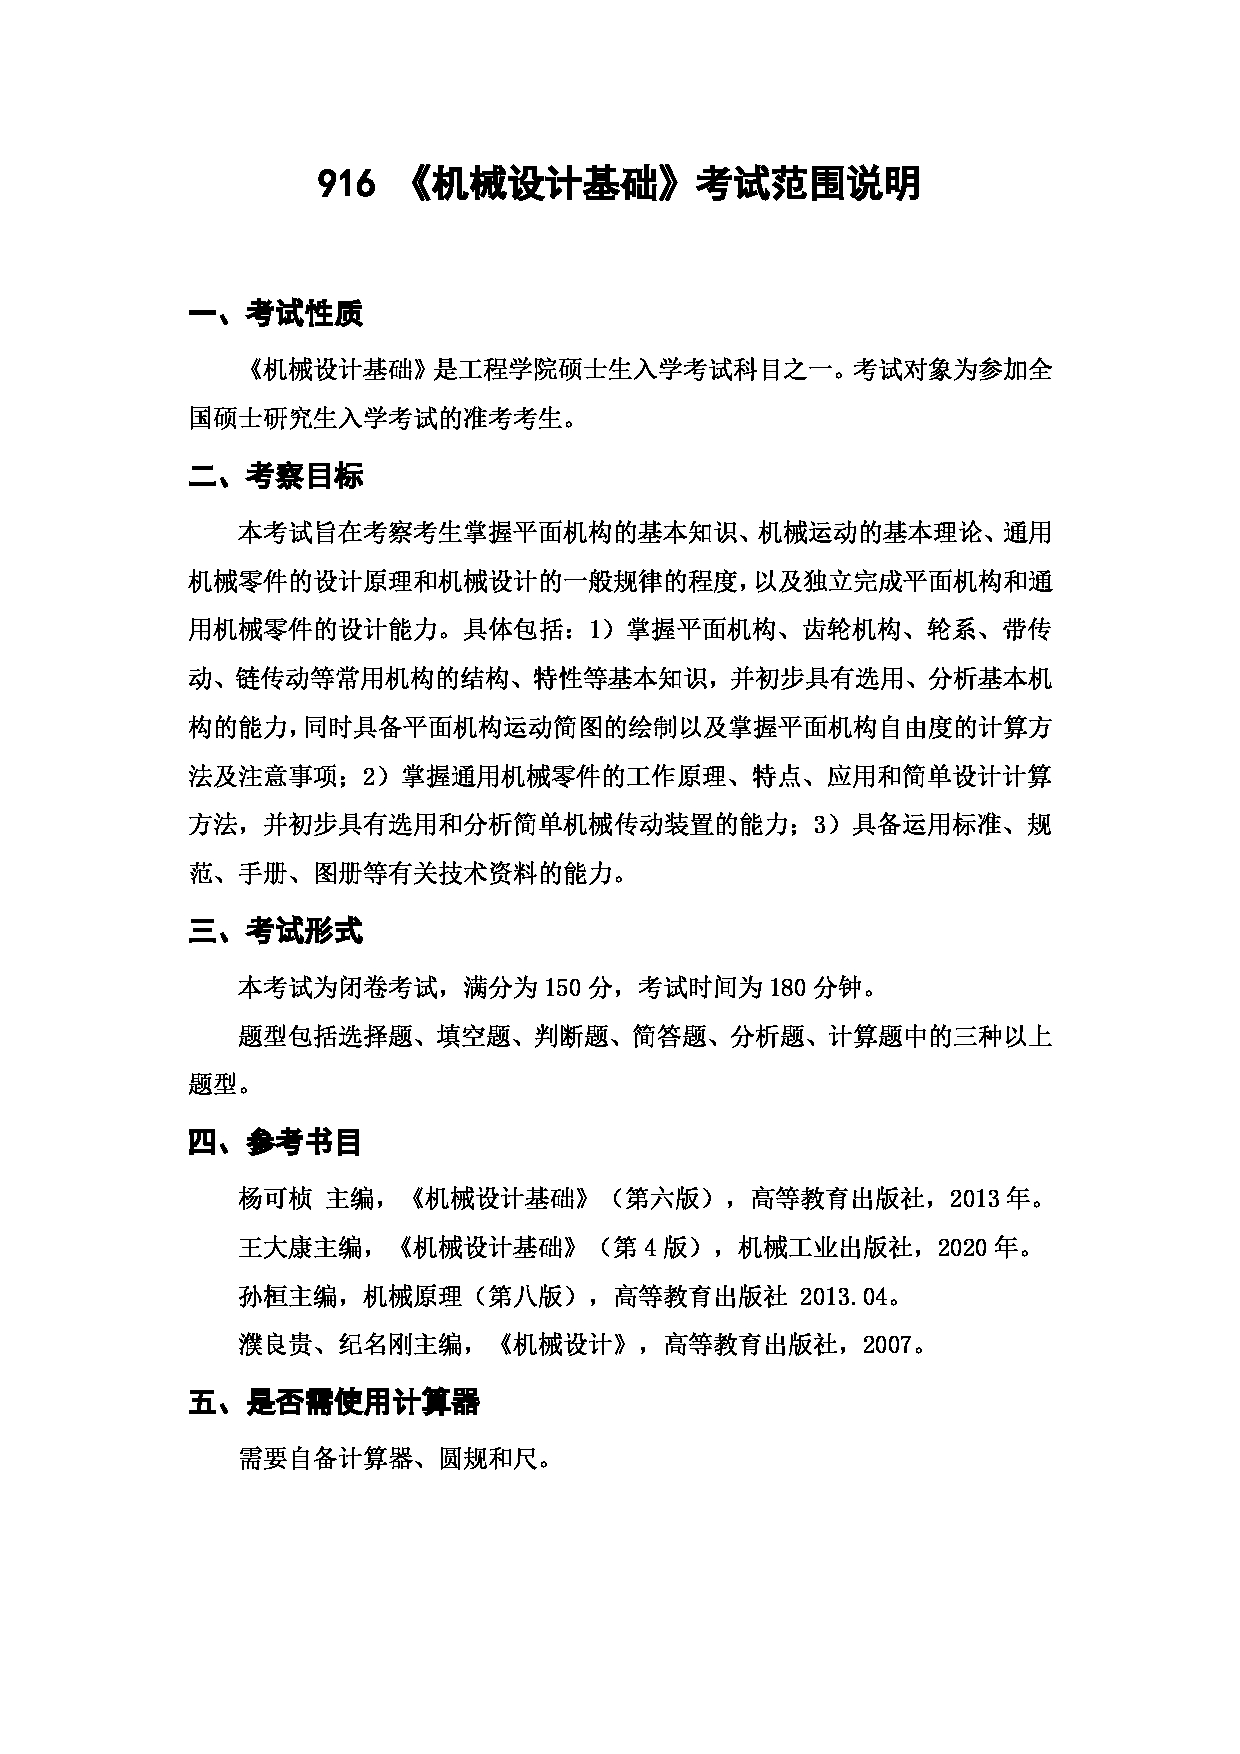 上海海洋大学2023年考研自命题科目 916《机械设计基础》 考试范围第1页